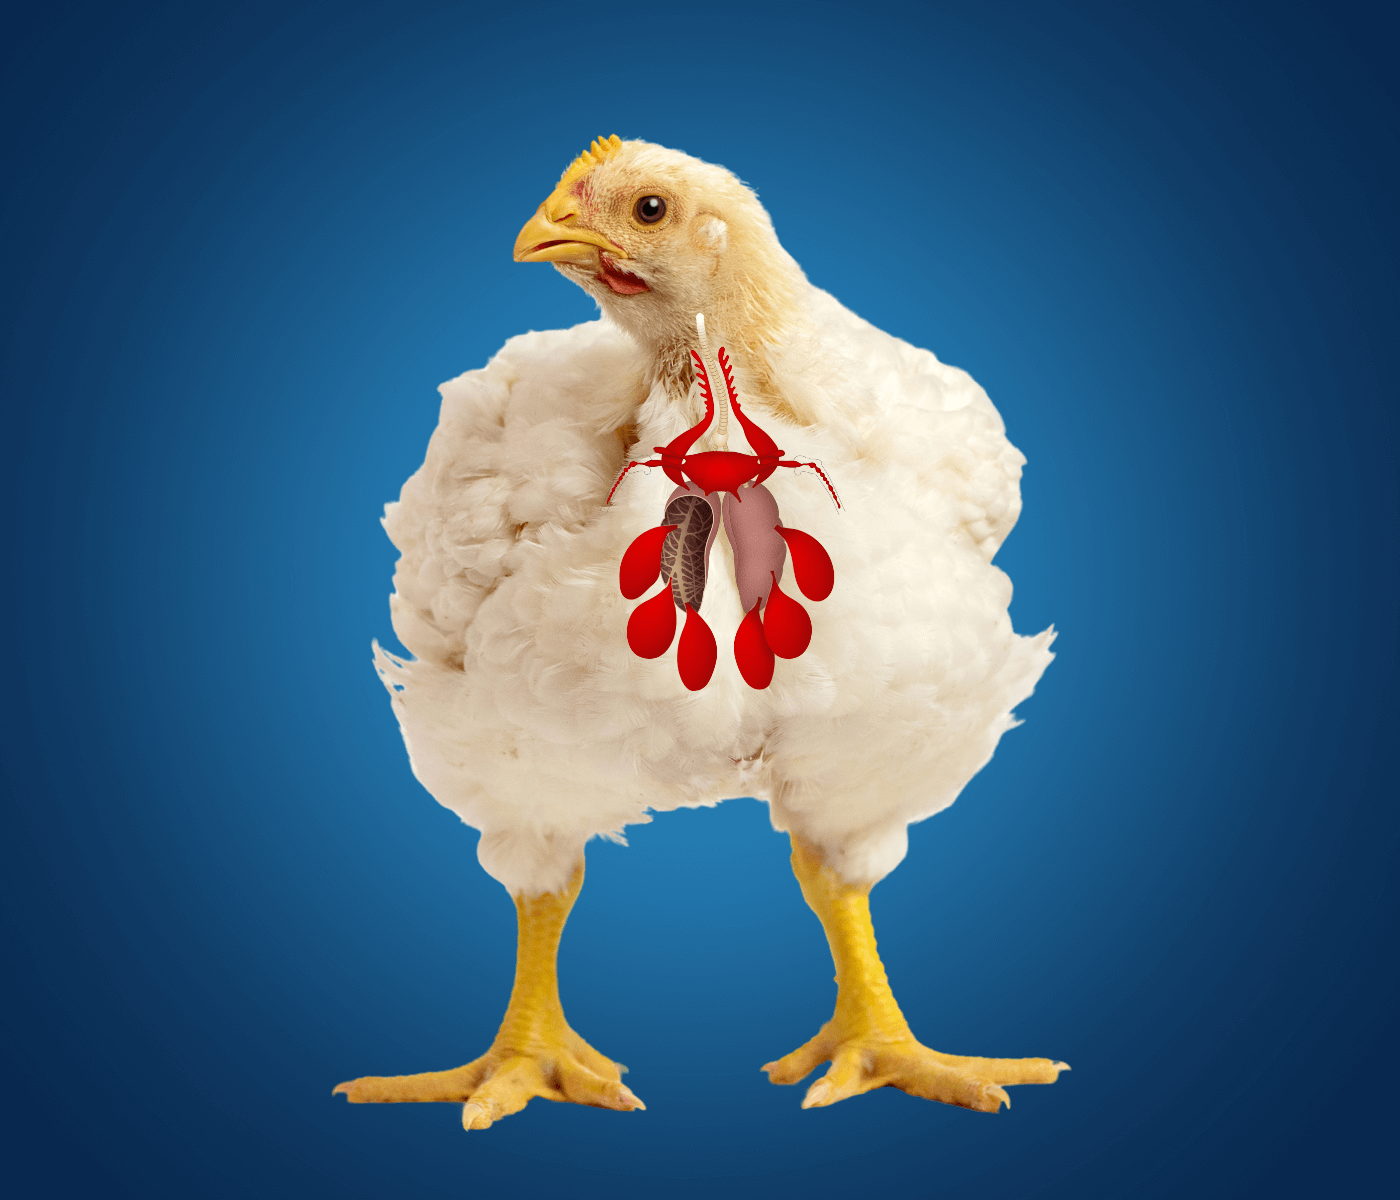 Manejo e cuidados na criação de frangos de corte com foco em prevenir quadros de aerossaculite